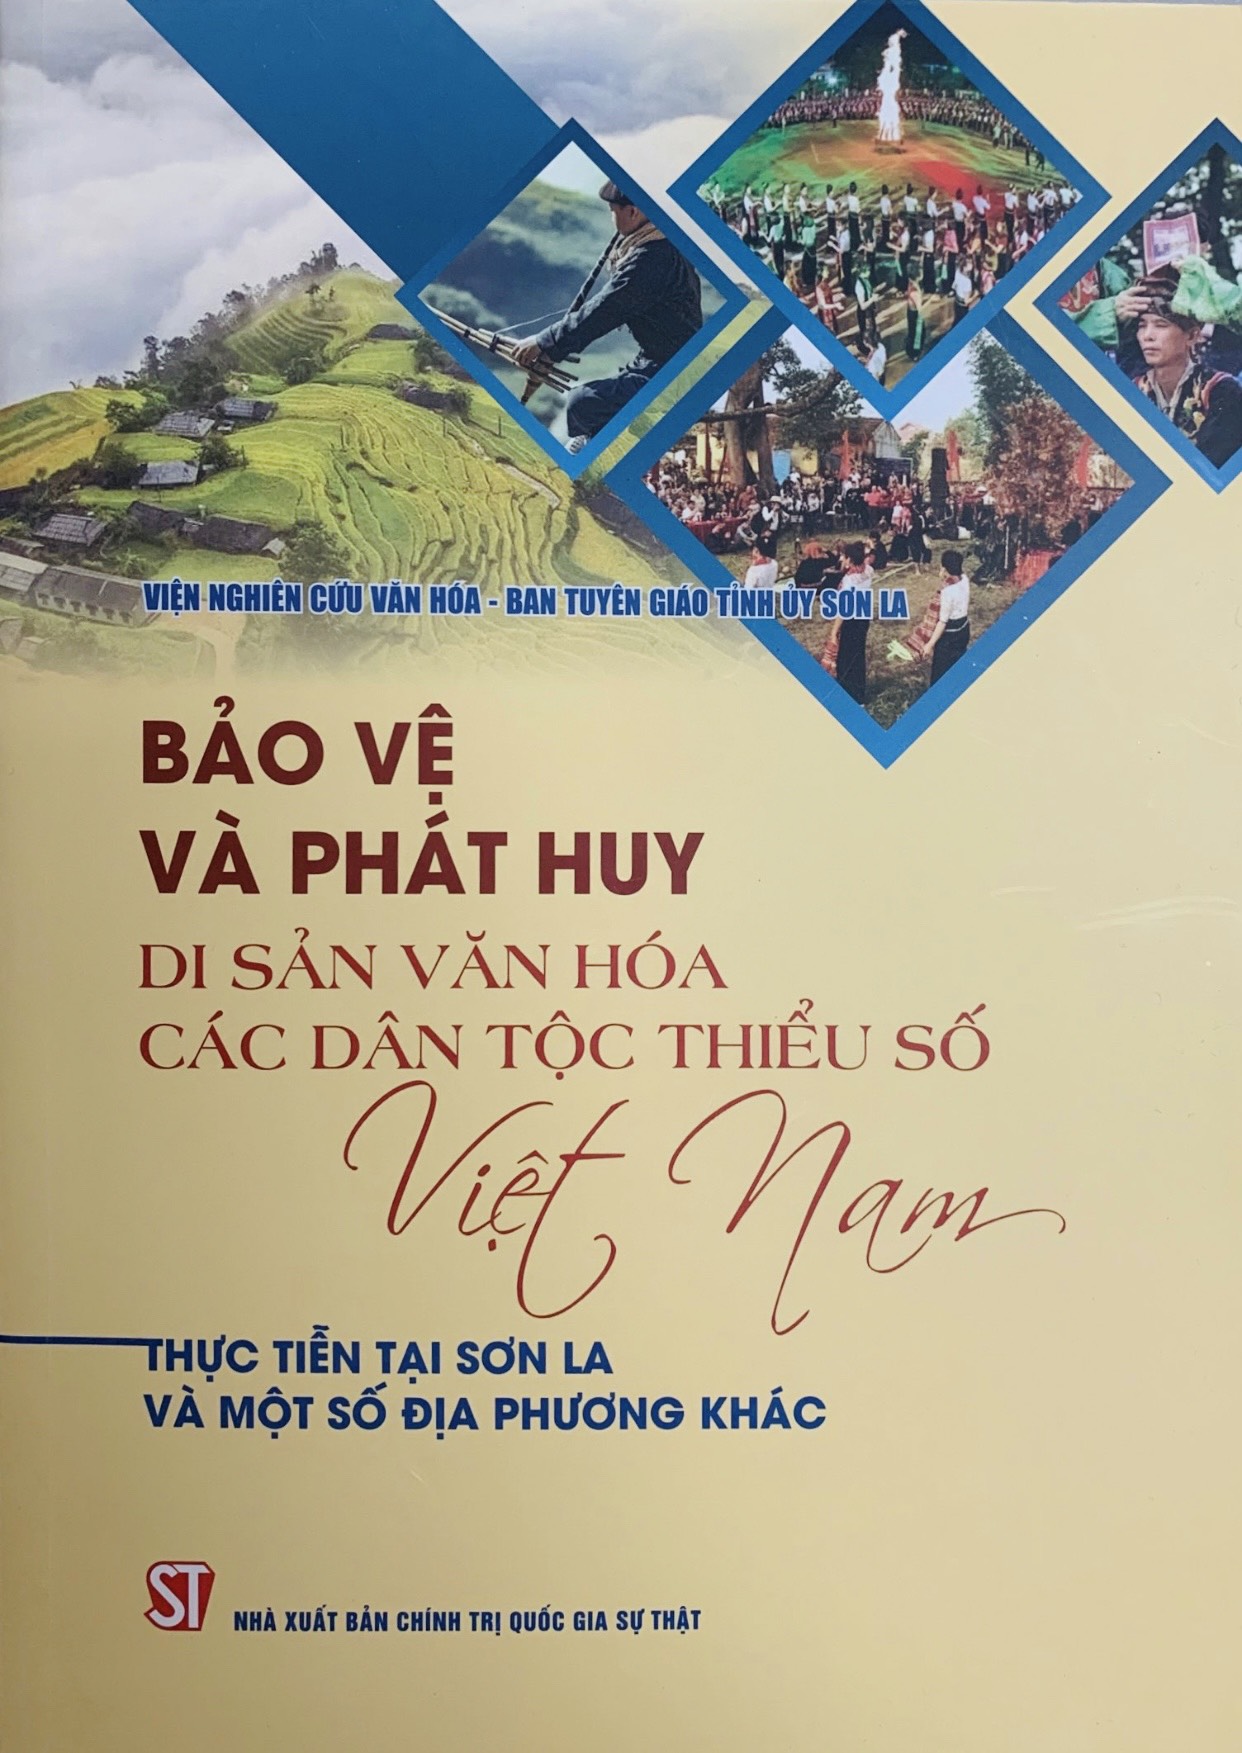 Bảo vệ và phát huy di sản văn hóa các dân tộc thiểu số Việt Nam: Thực tiễn tại Sơn La và một số địa phương khác